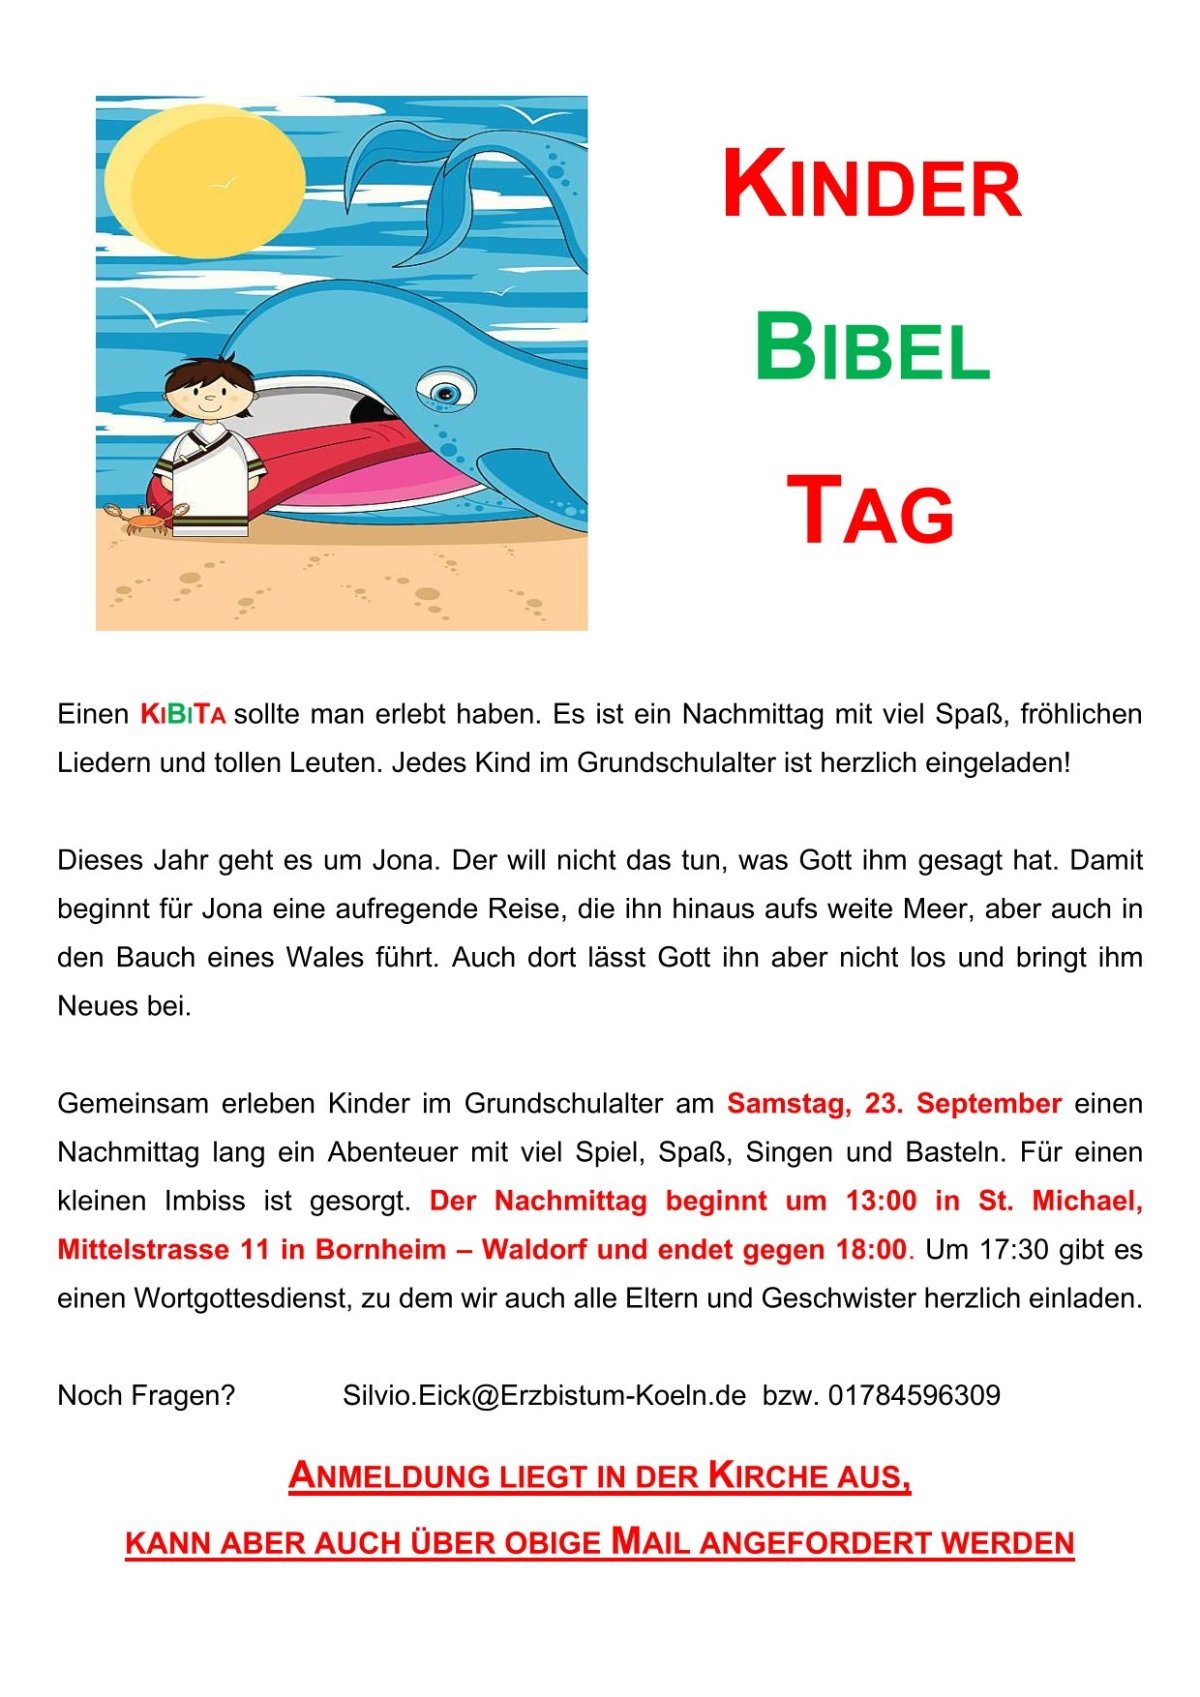 2023_Kinder Bibel Tag_Plakat Jona-1 (c) Pfarrer Silvio Eick